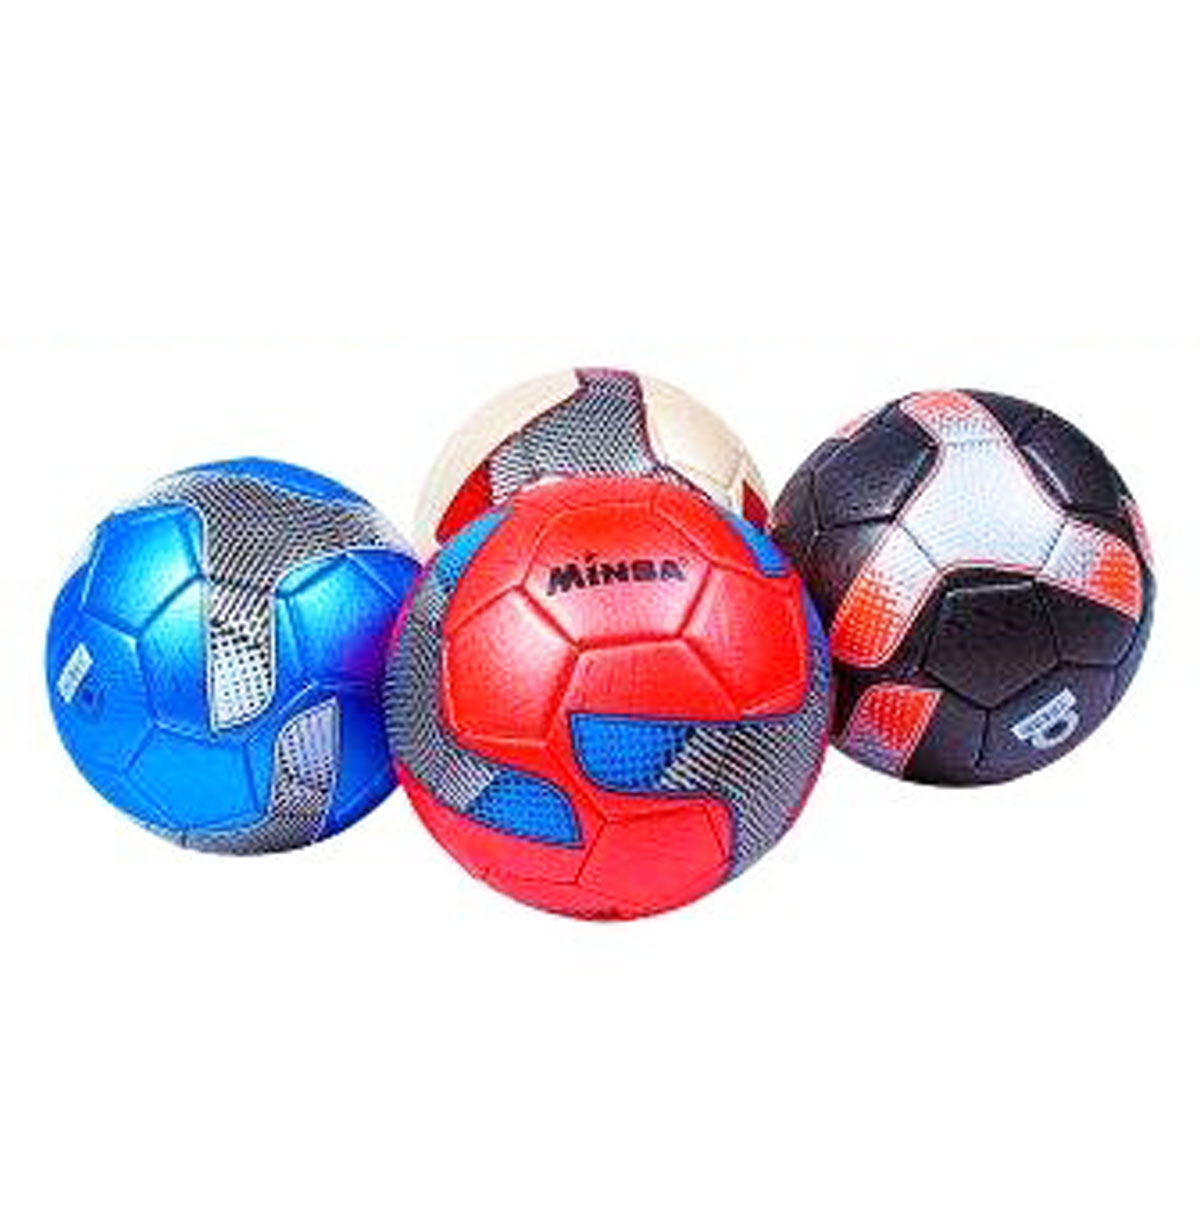 Мяч футбольный 'Minsa' в ассортименте